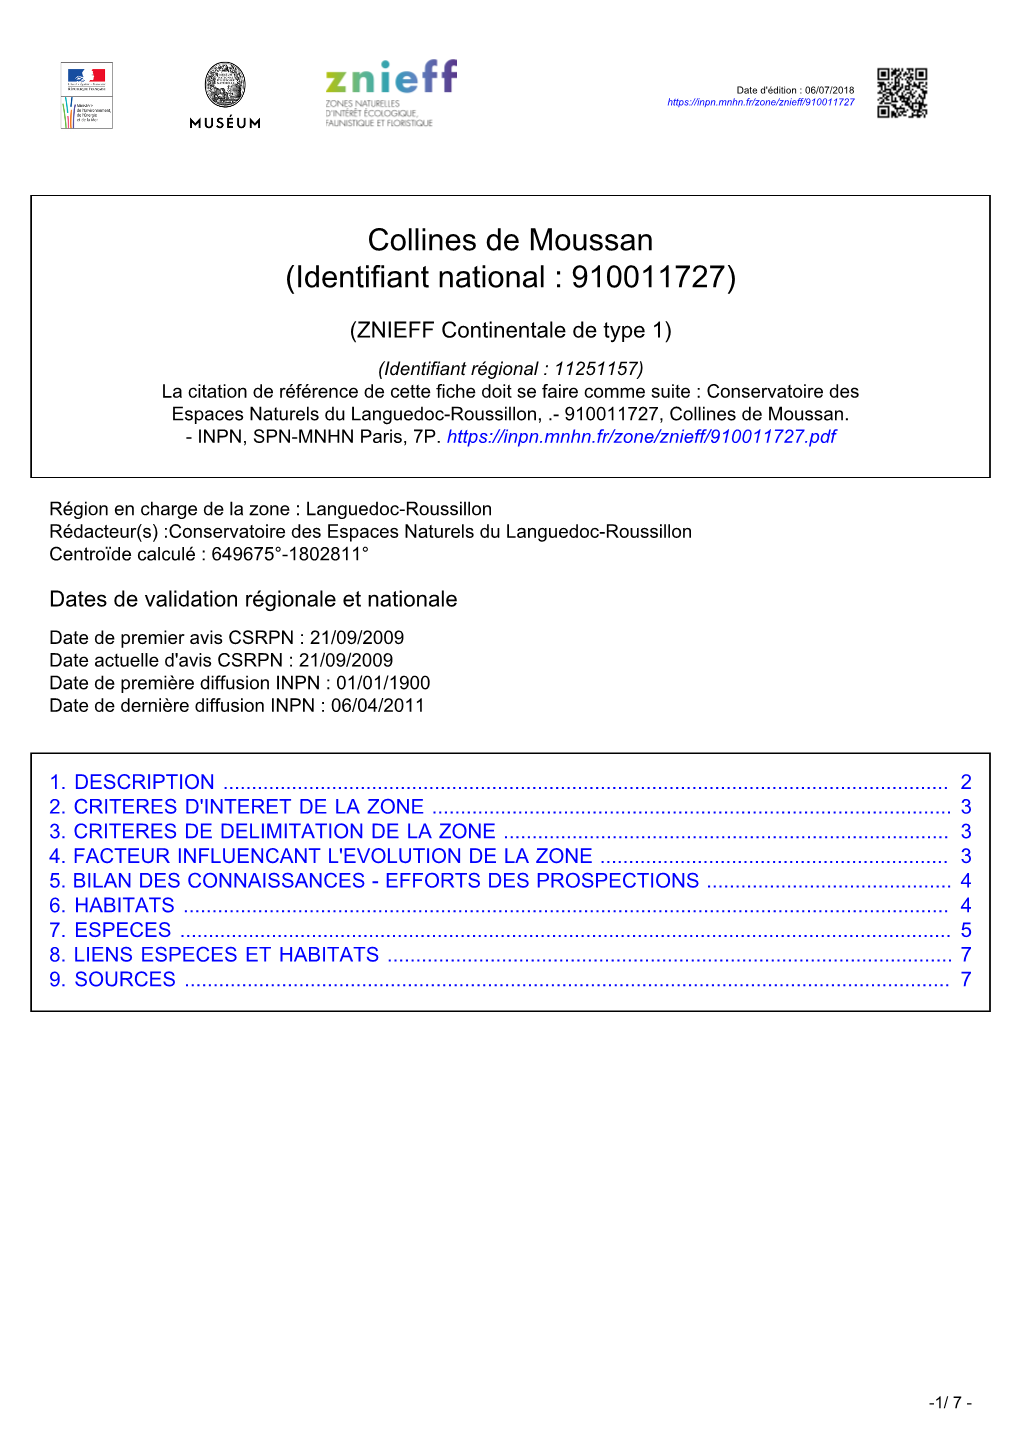 Collines De Moussan (Identifiant National : 910011727)